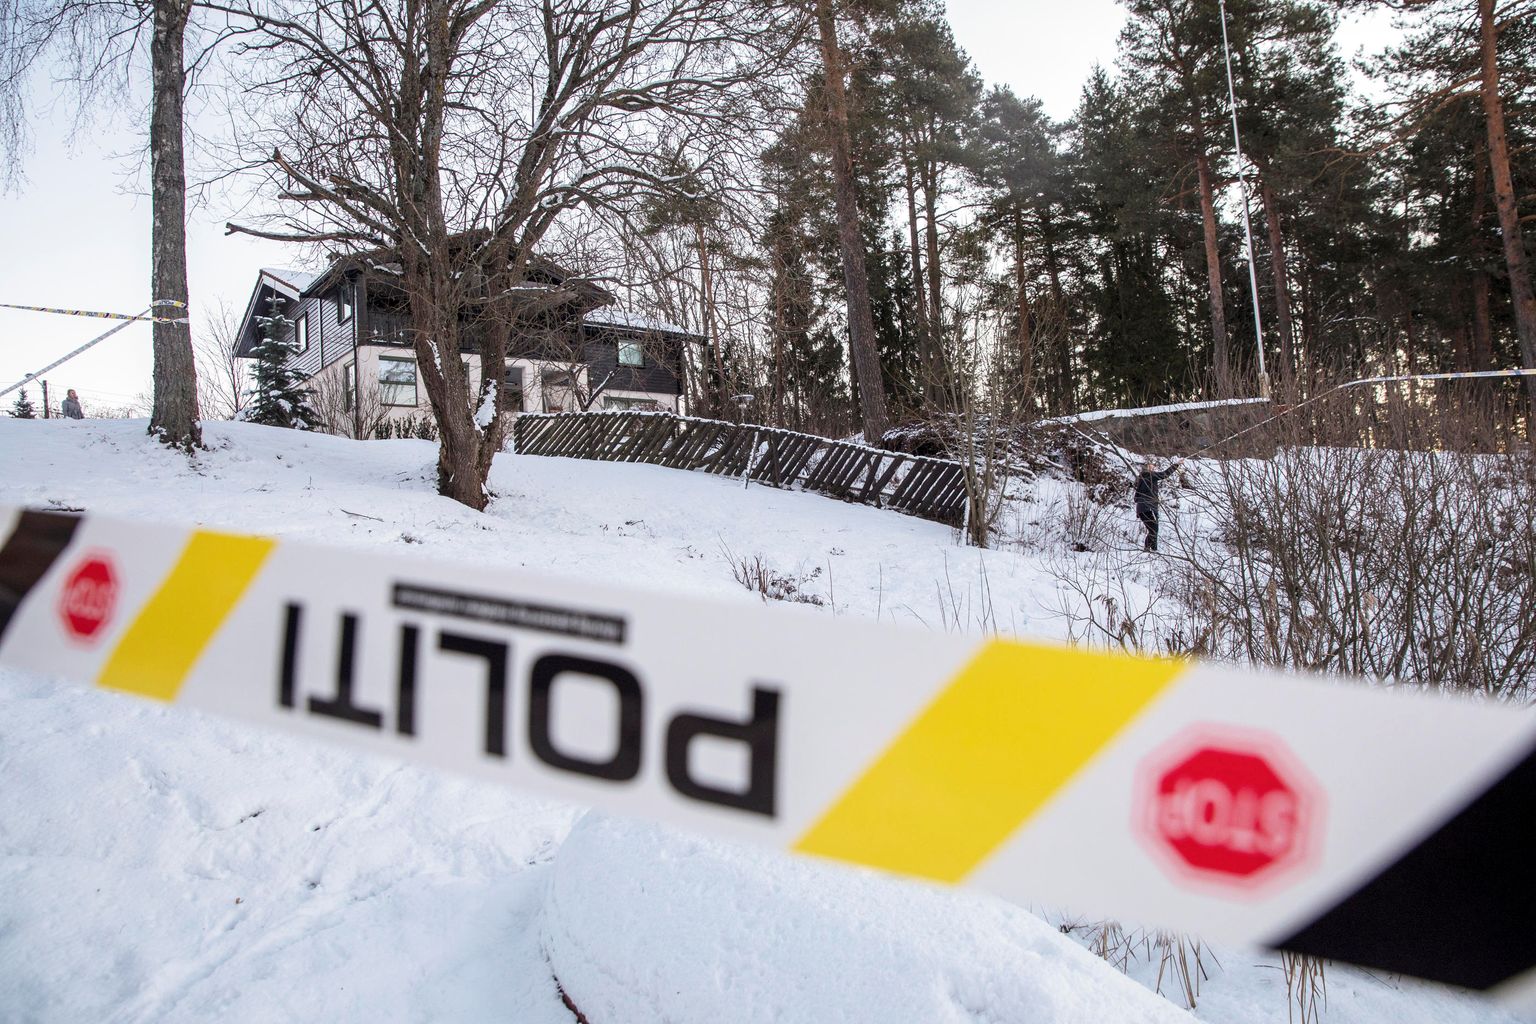 Norra justiitsministrit Tor Mikkel Warat on viimastel kuudel korduvalt ähvardatud ja rünnatud.